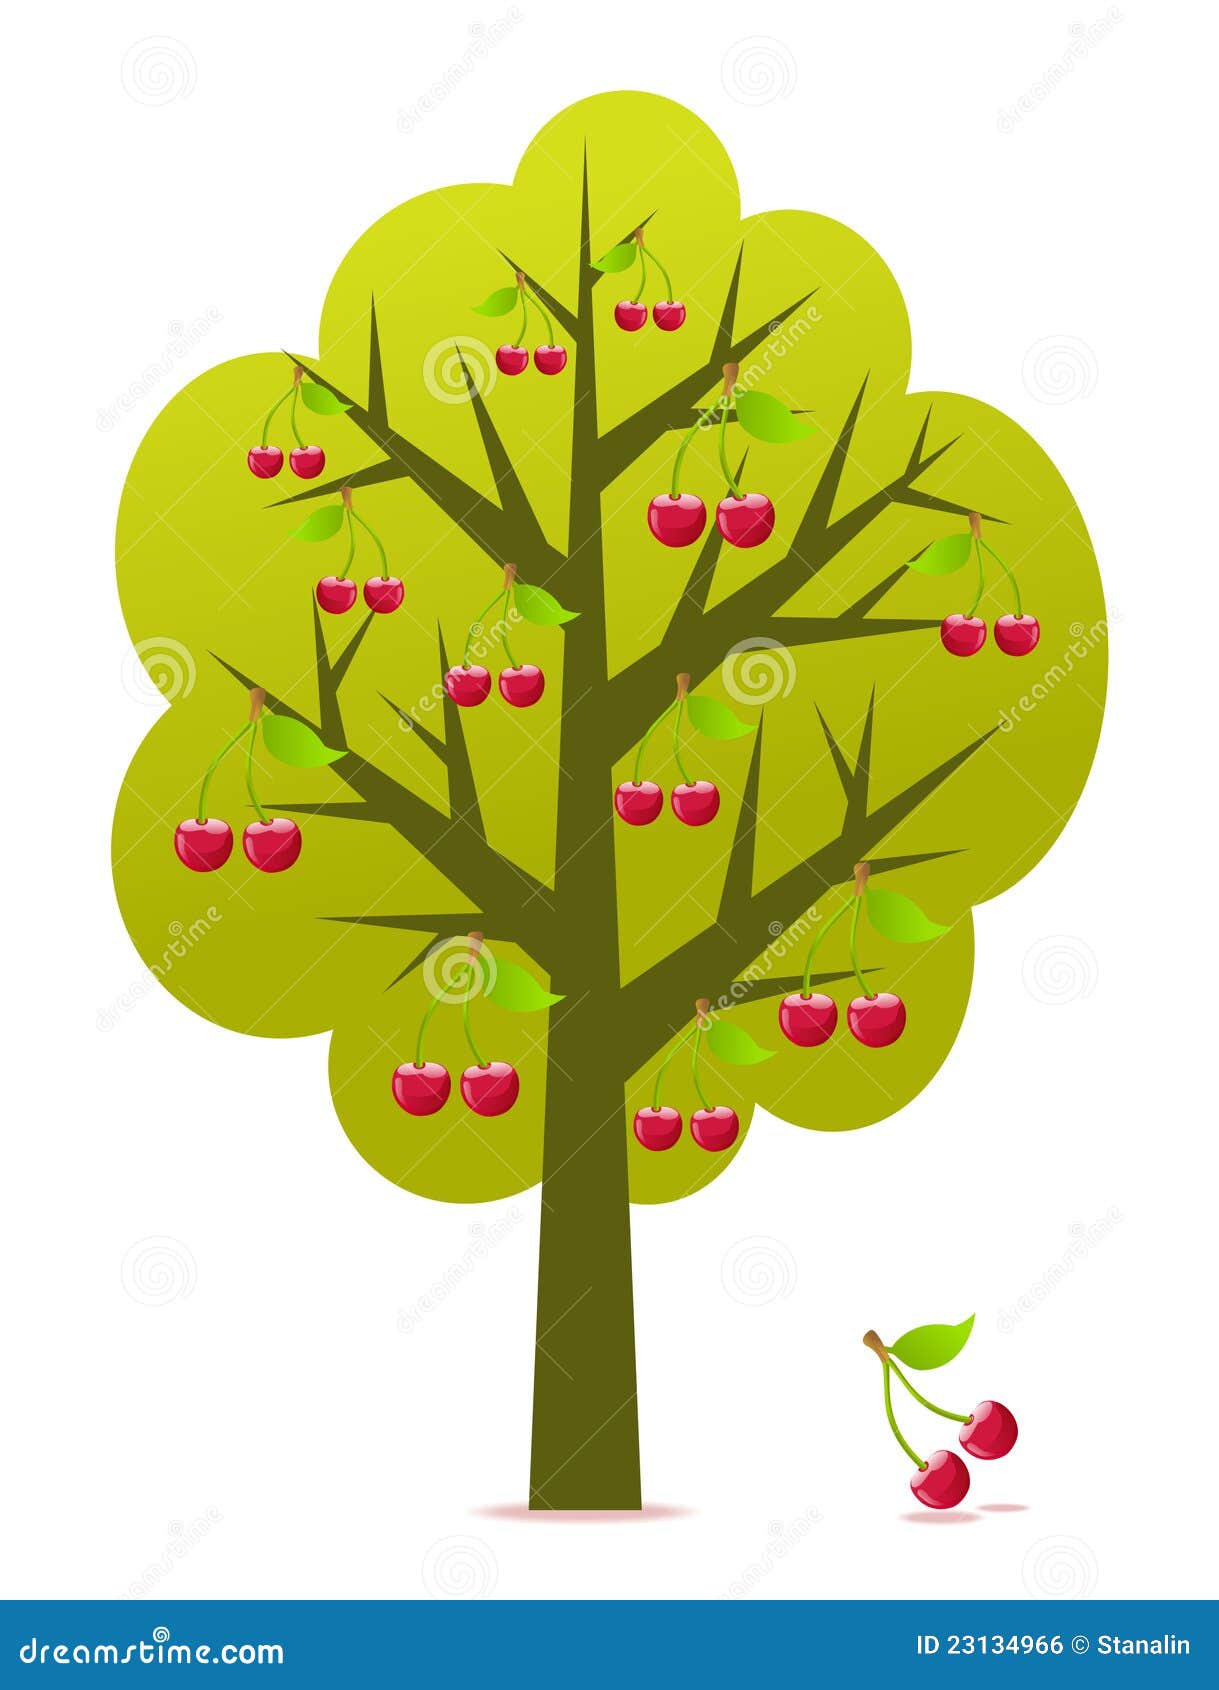 Нарисованное дерево с вишенками